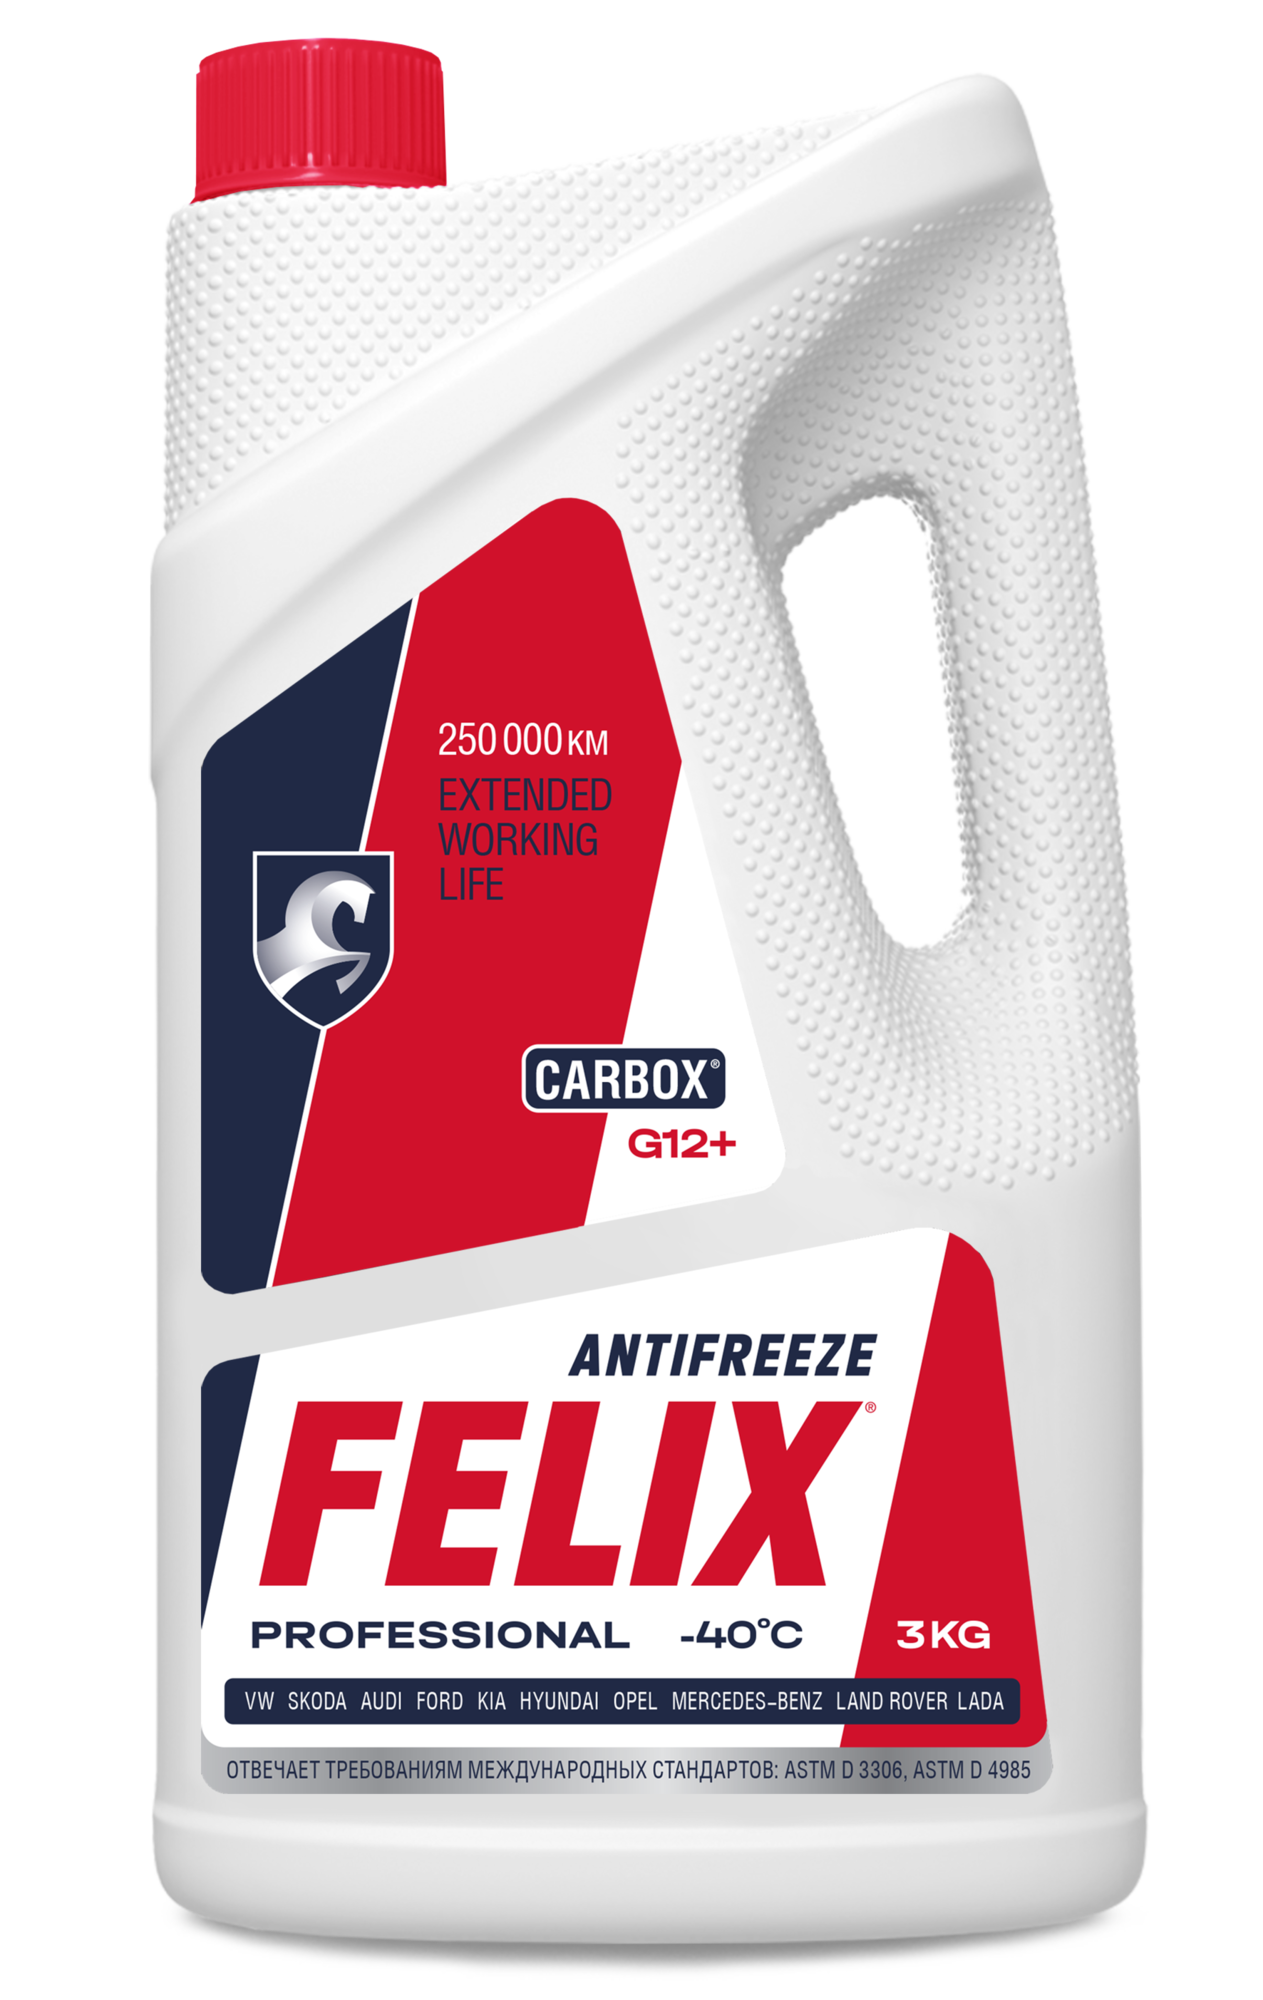 Антифриз Felix Carbox красный белая канистра 1 кг ТС-40